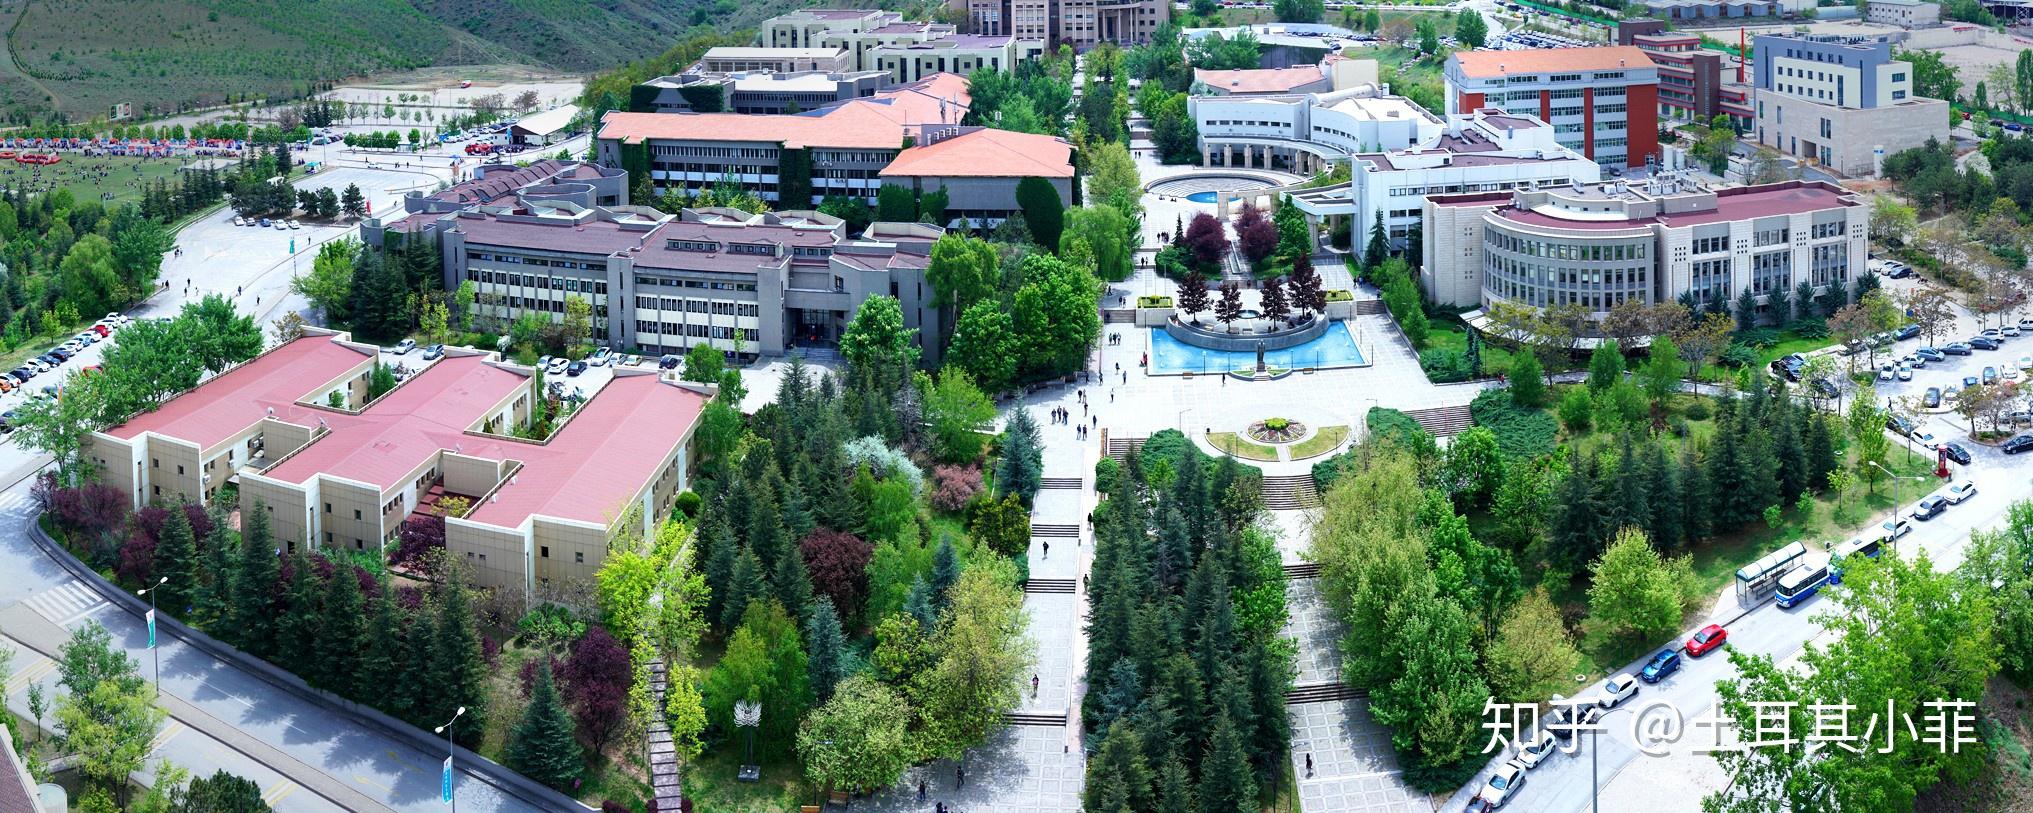 qs世界大学排名中上榜的土耳其大学